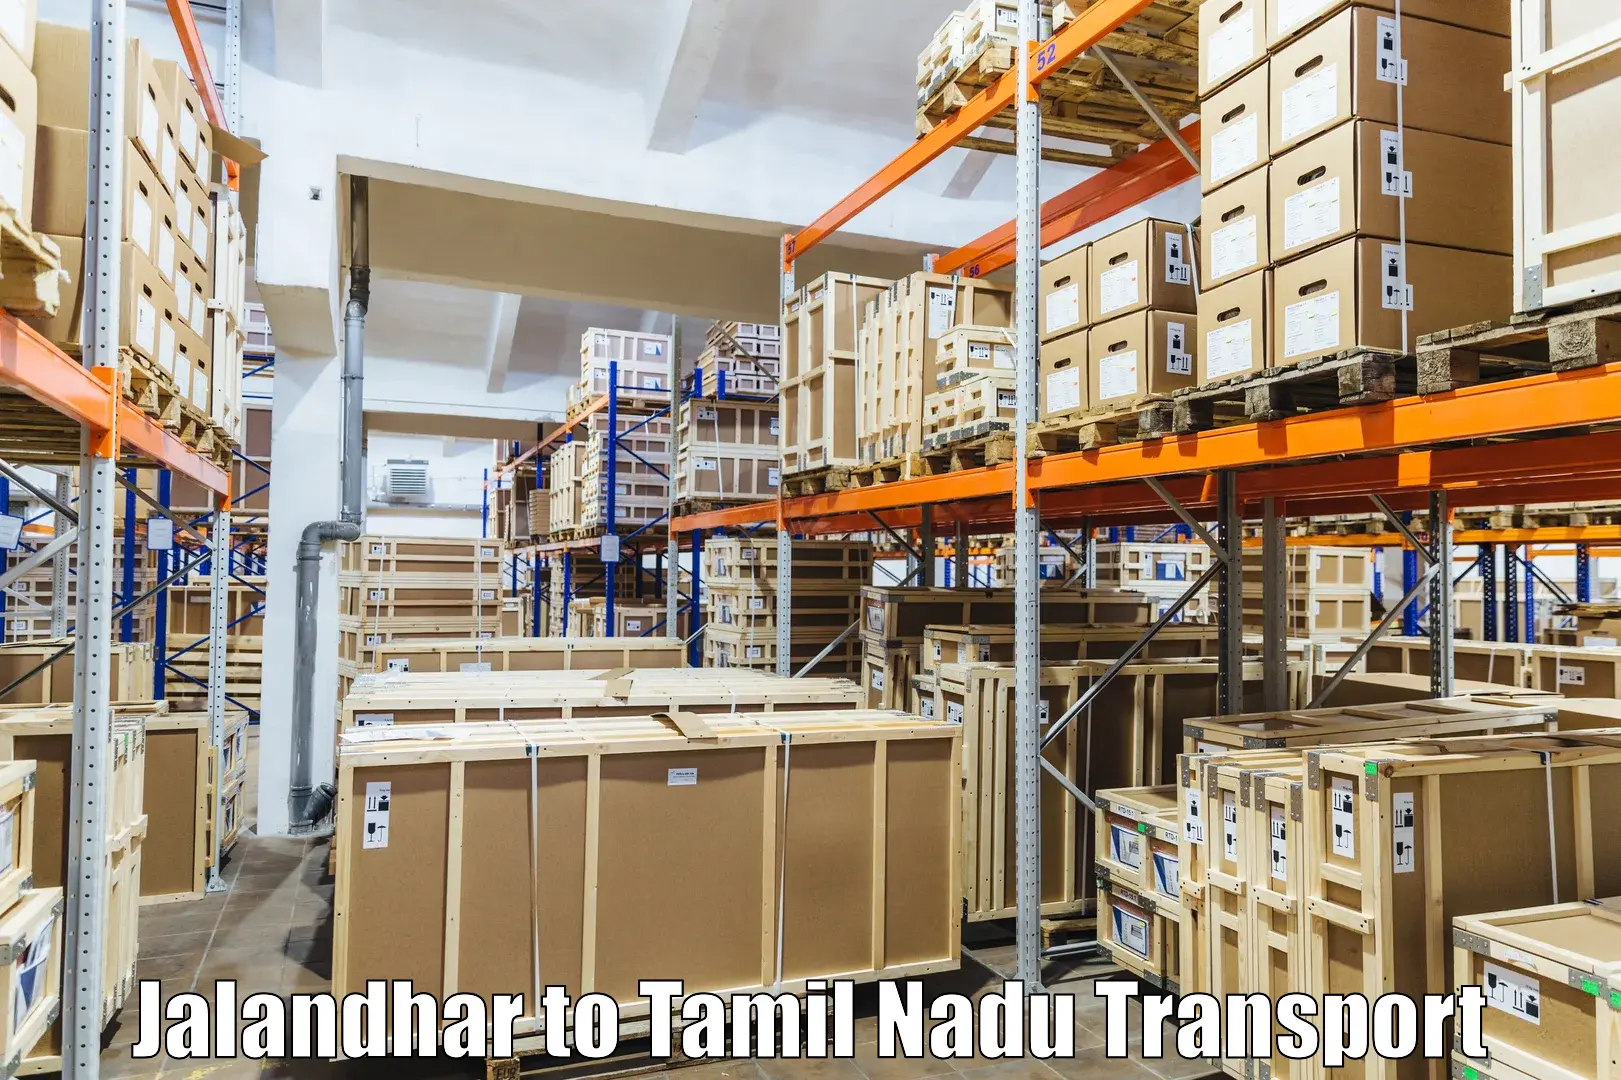 Transport services in Jalandhar to IIIT Tiruchirappalli